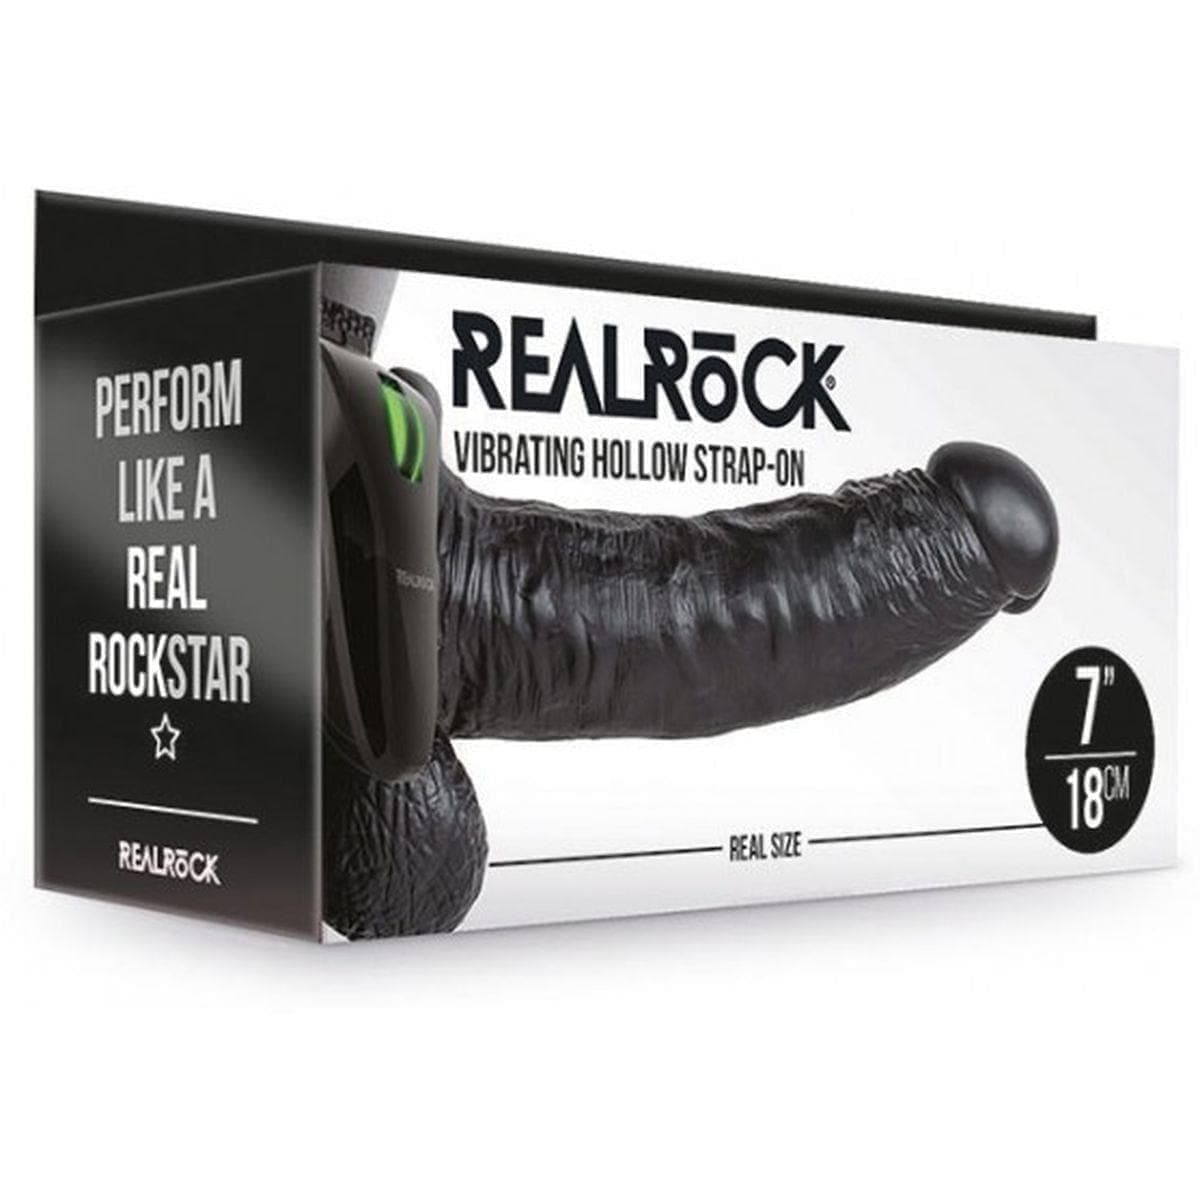 Strap-on Oco RealRock com Testiculos e Vibração, Preto 18cm Ø4cm  RealRock   